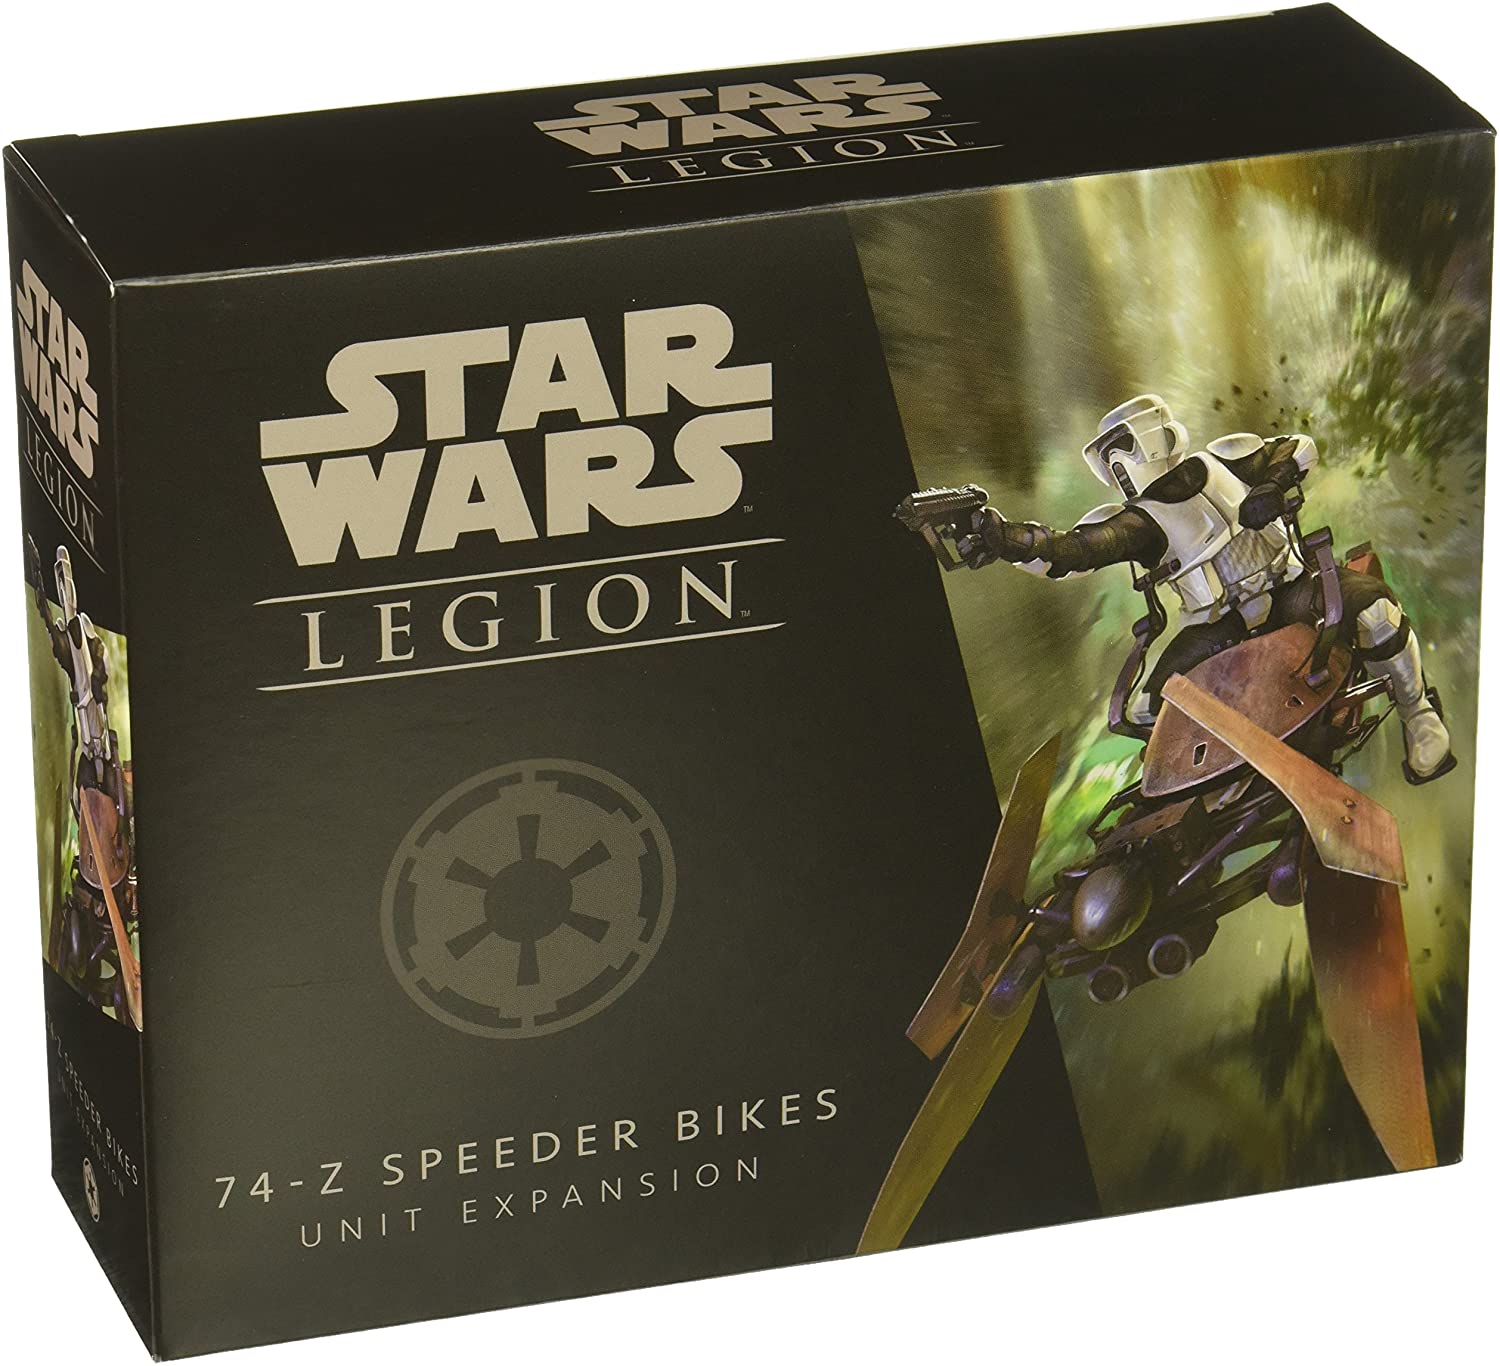 Star Wars Legion - 74-Z Speeder Bikes Unit Expansion